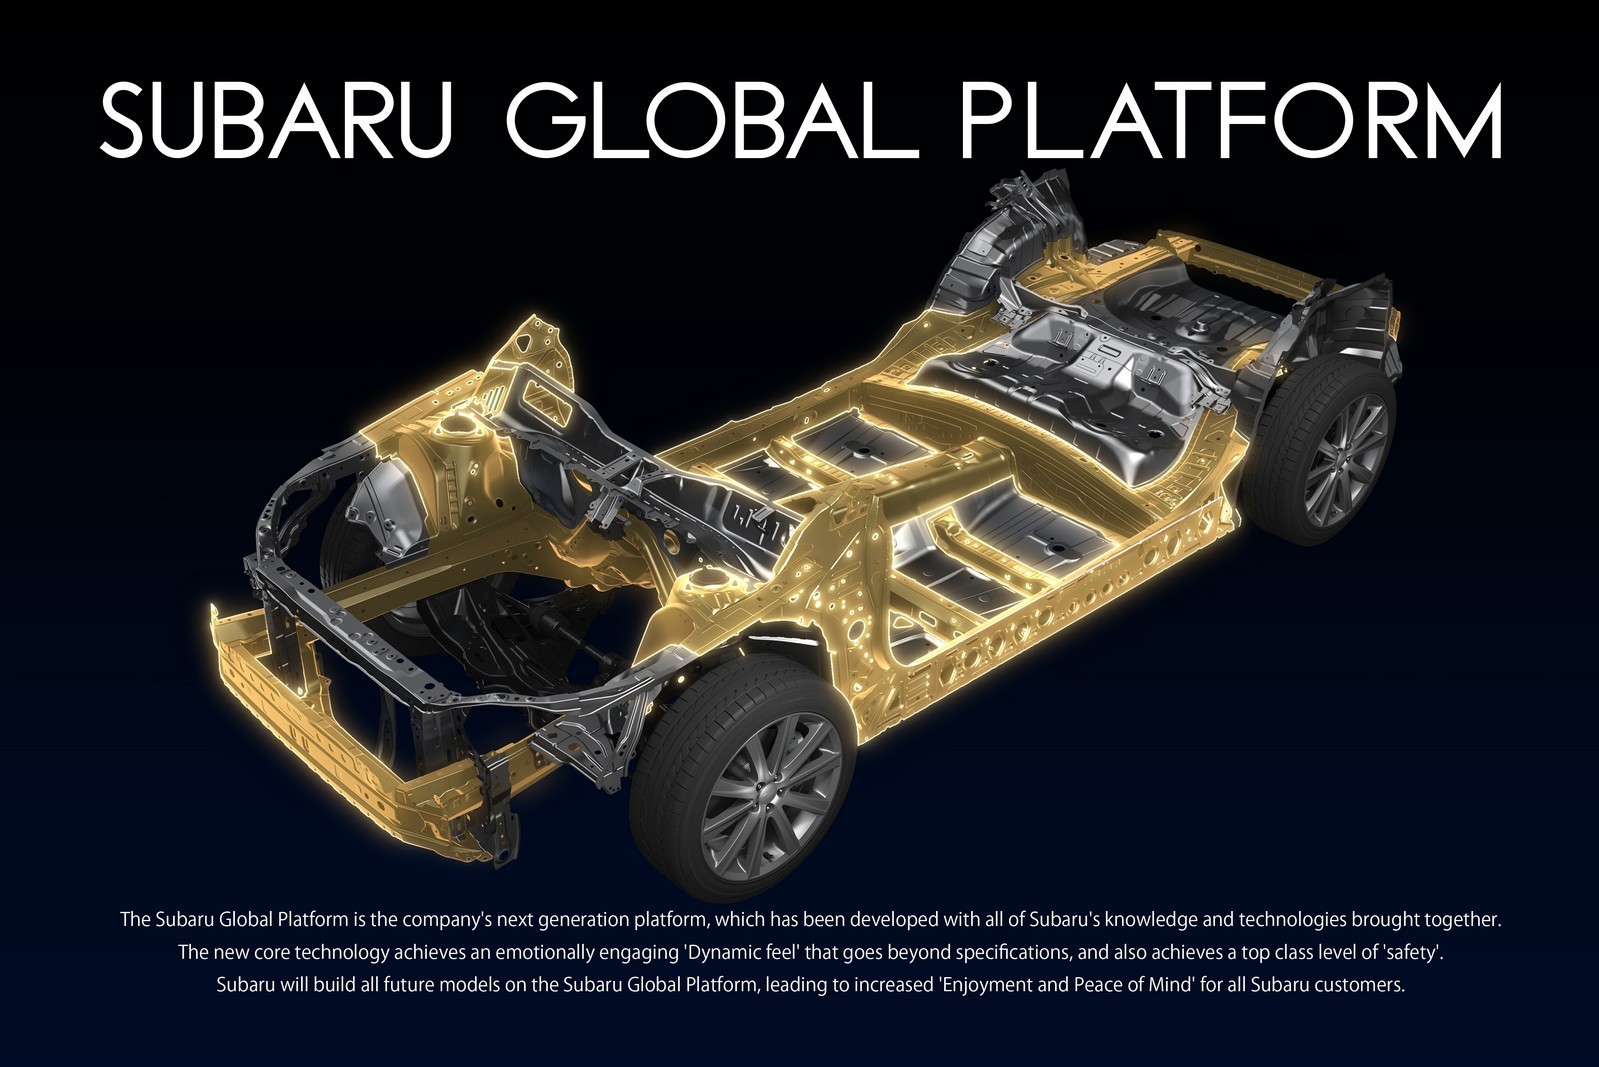 Una nueva plataforma global para Subaru acogerá modelos térmicos, híbridos y eléctricos